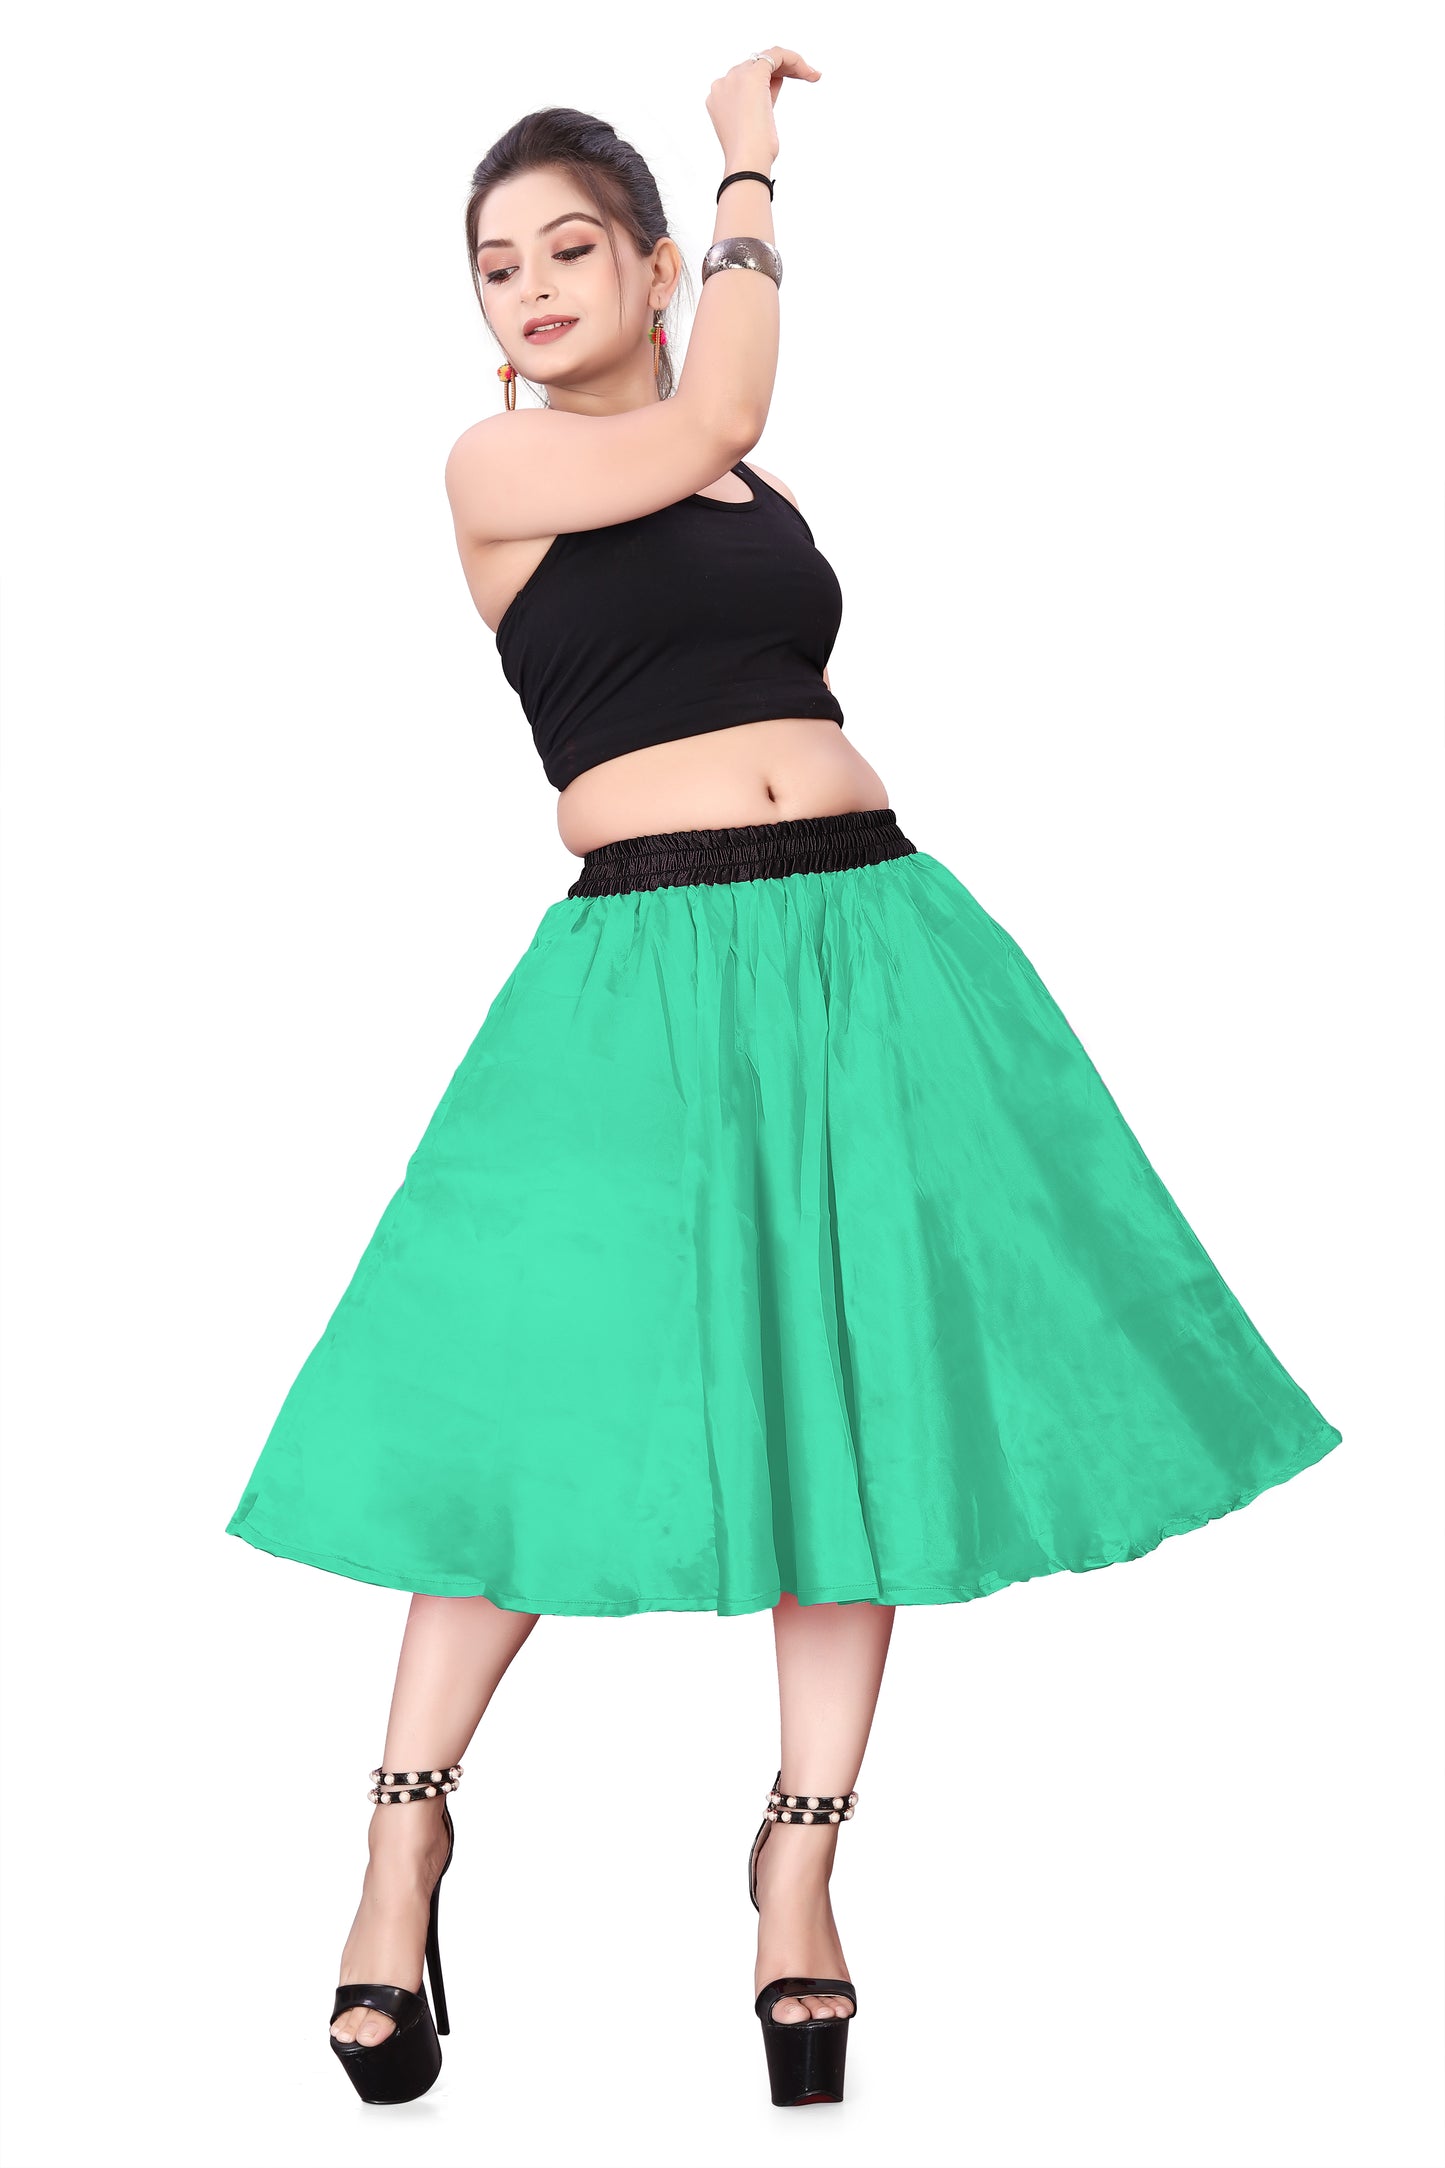 Satin Midi Skirt Party wear Skirt S24-Regular Size 1